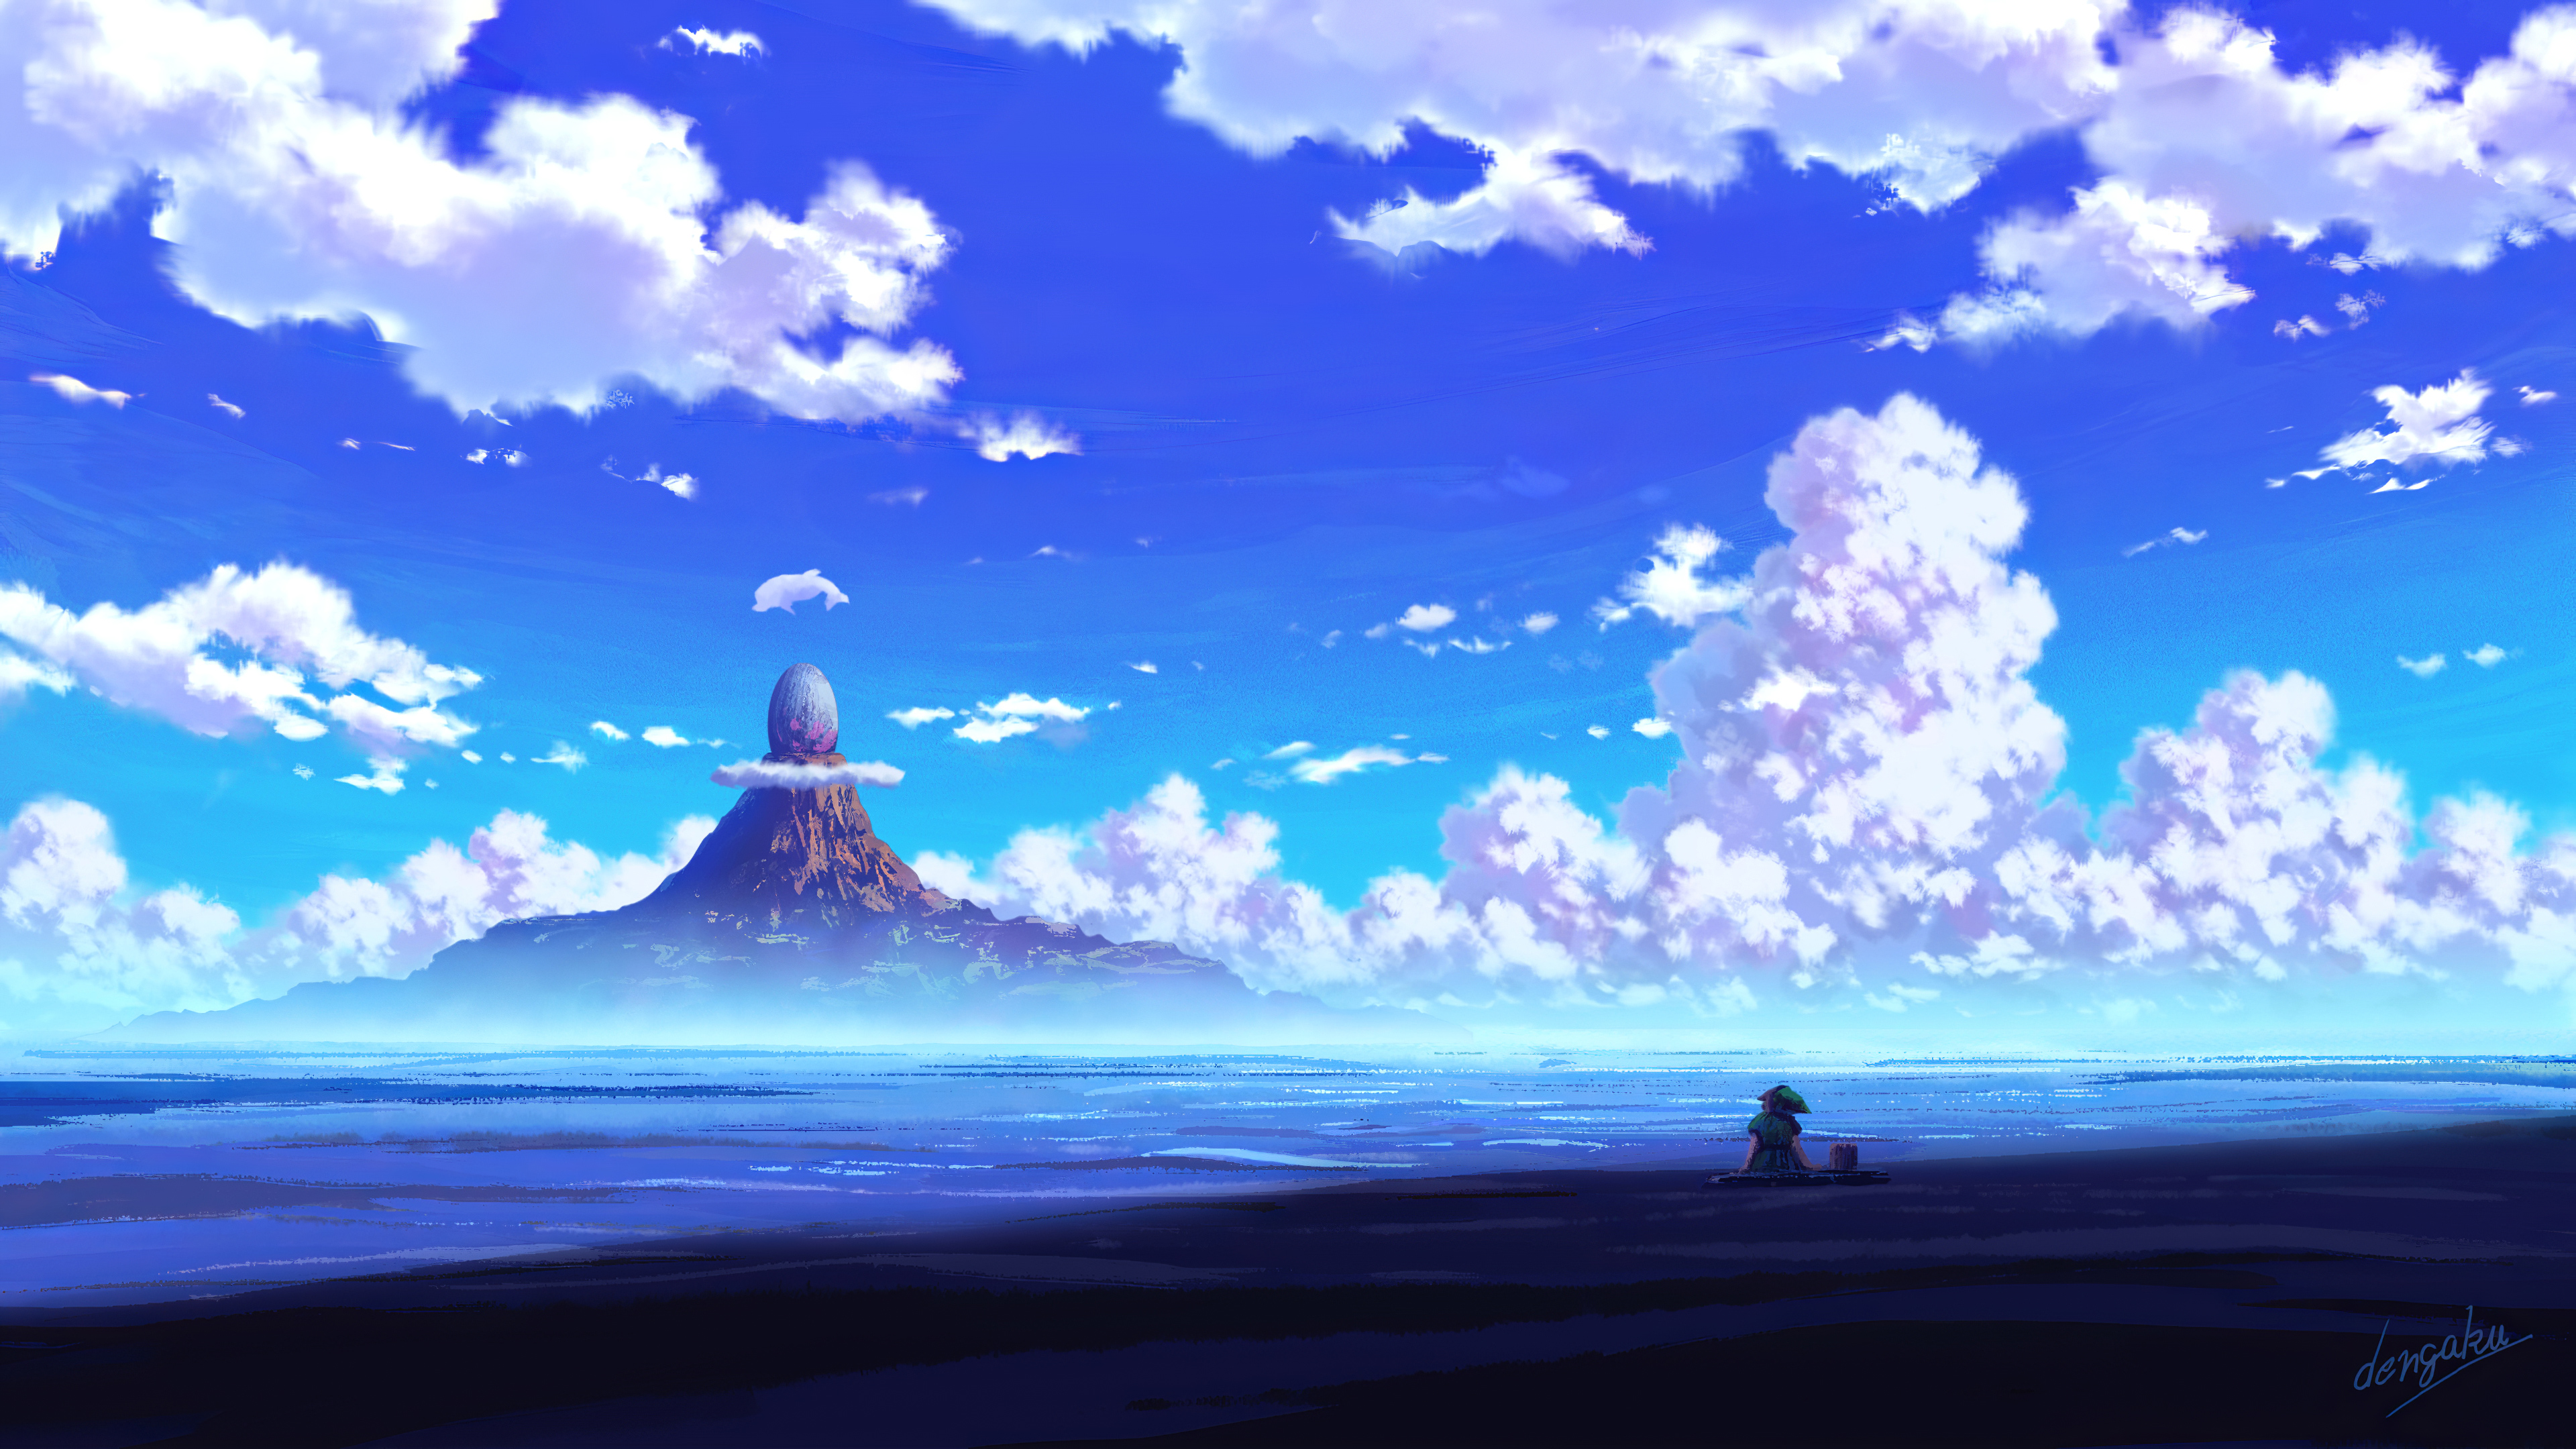 Anime Landscape 4k Ultra HD Wallpaper by dengaku